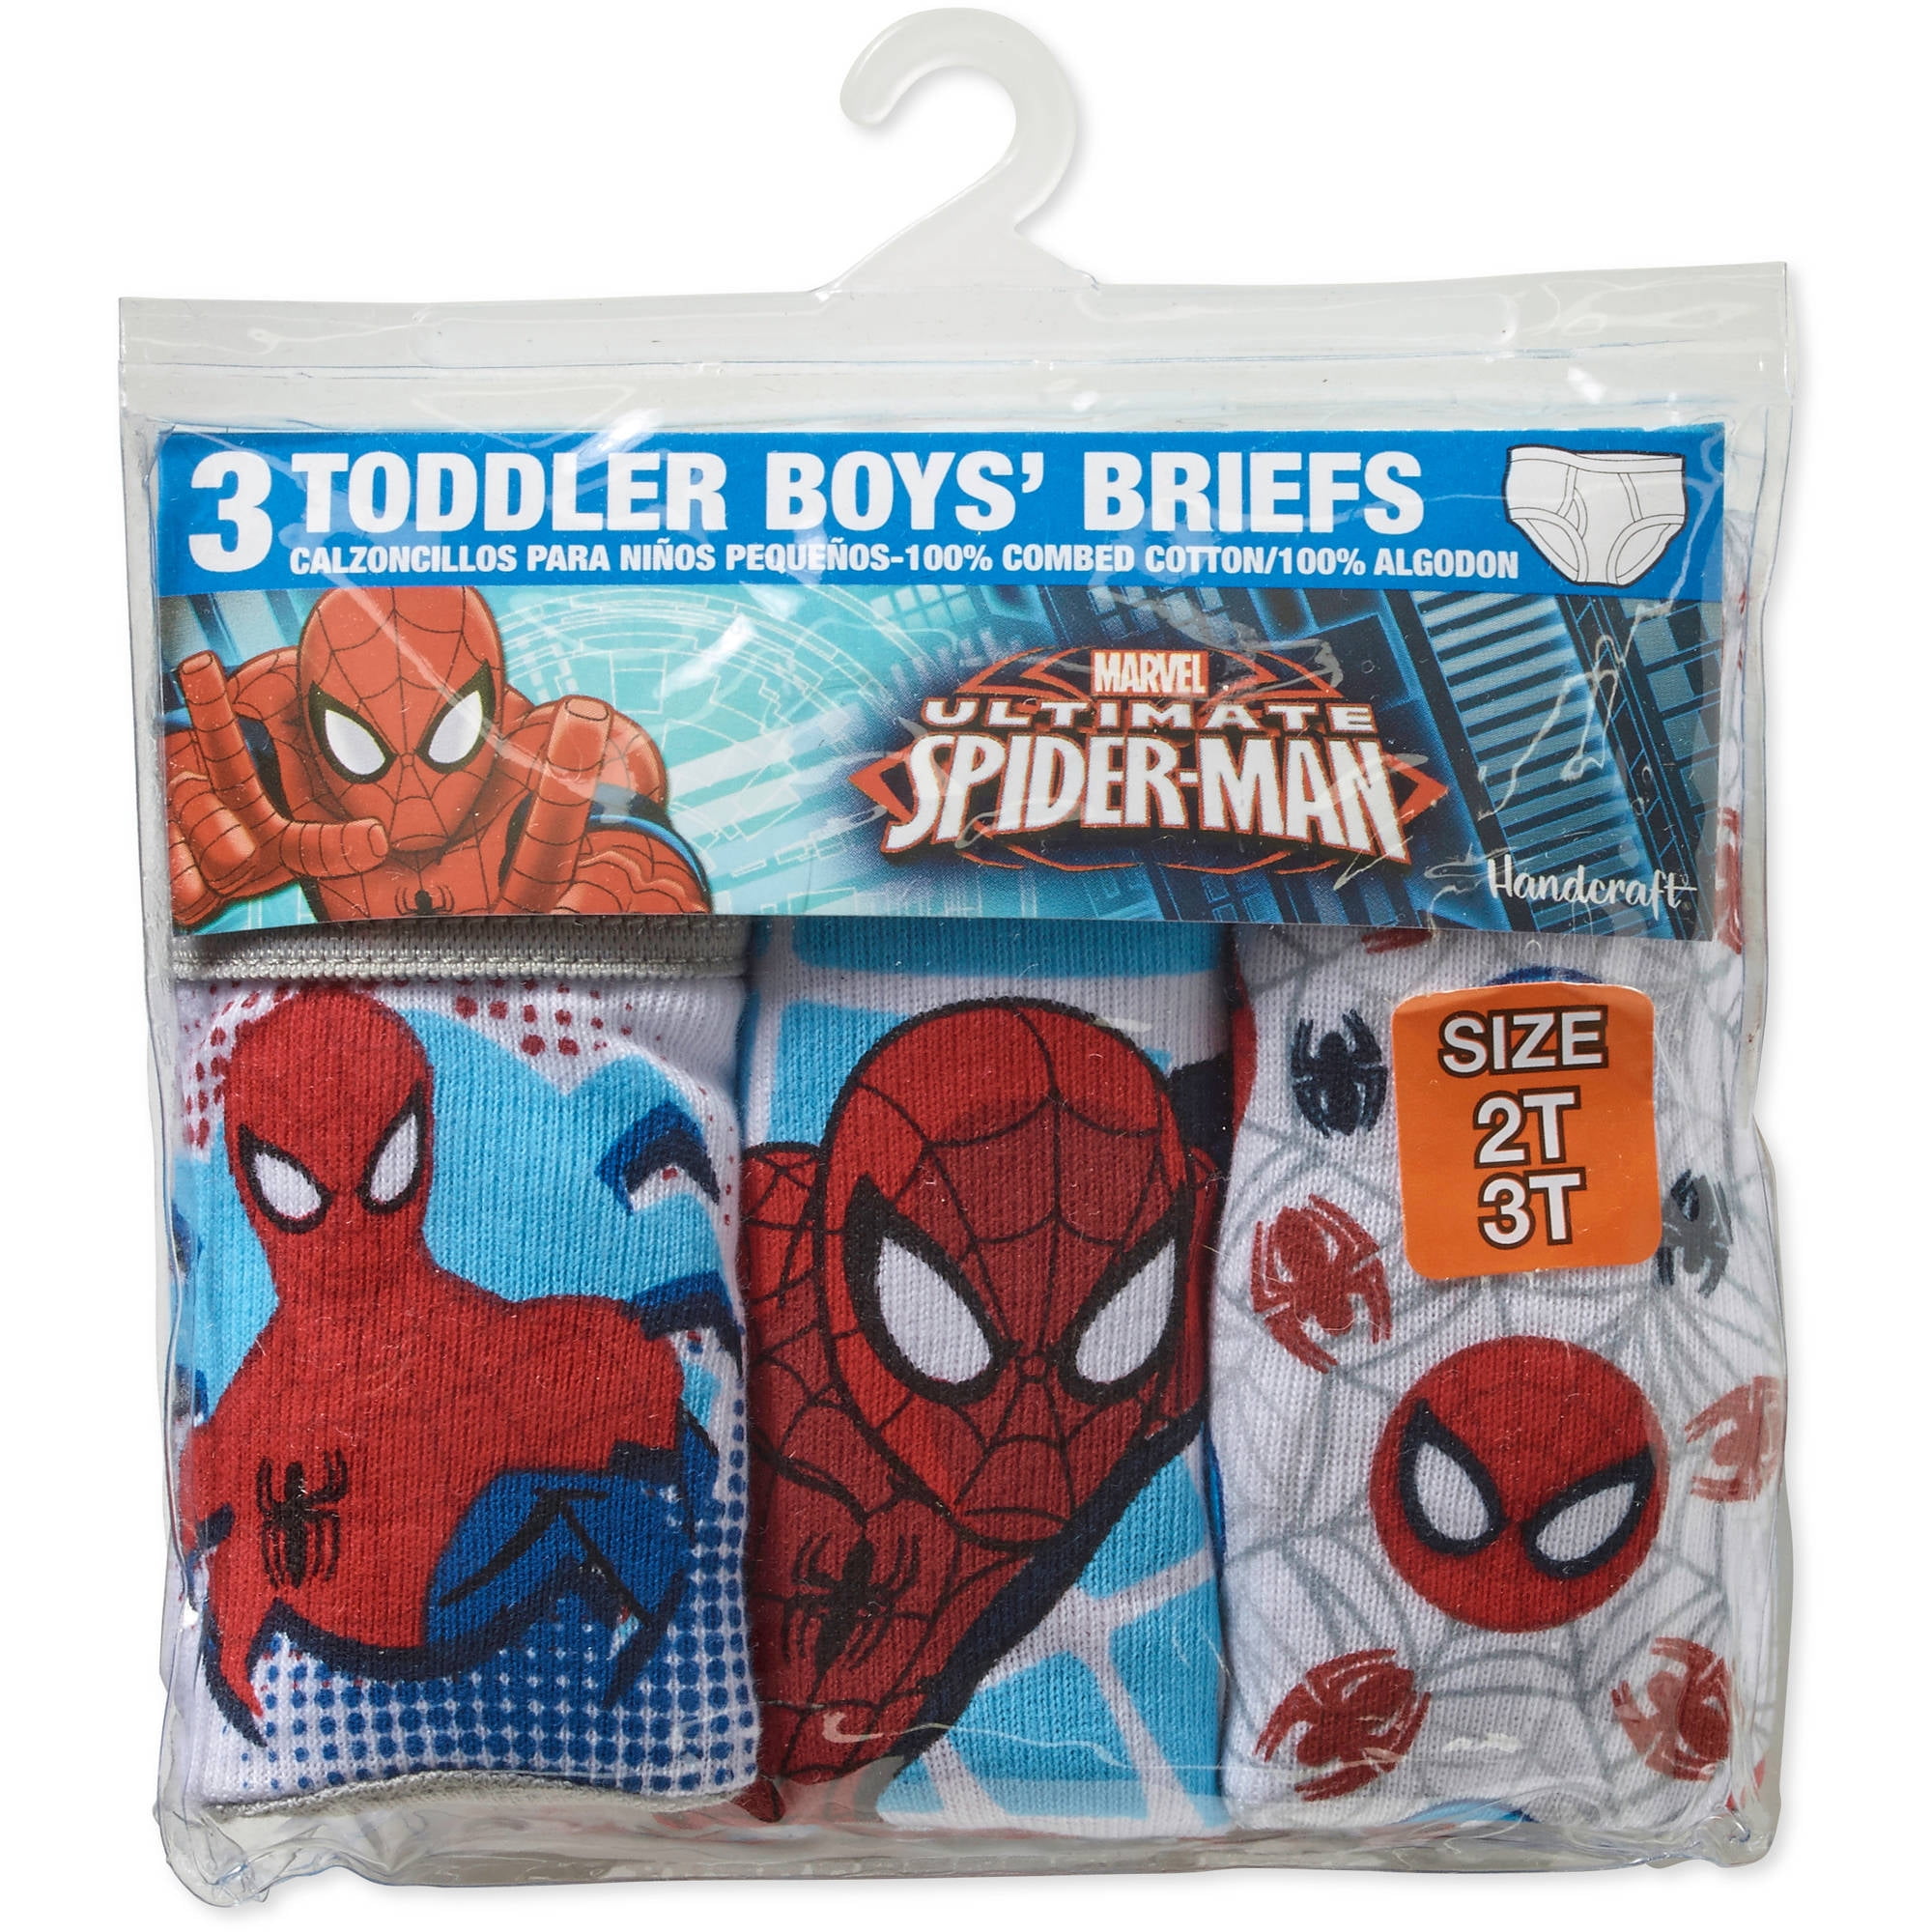 Spider-Man Brief Underwear, 3-Pack (Toddler Boys) 